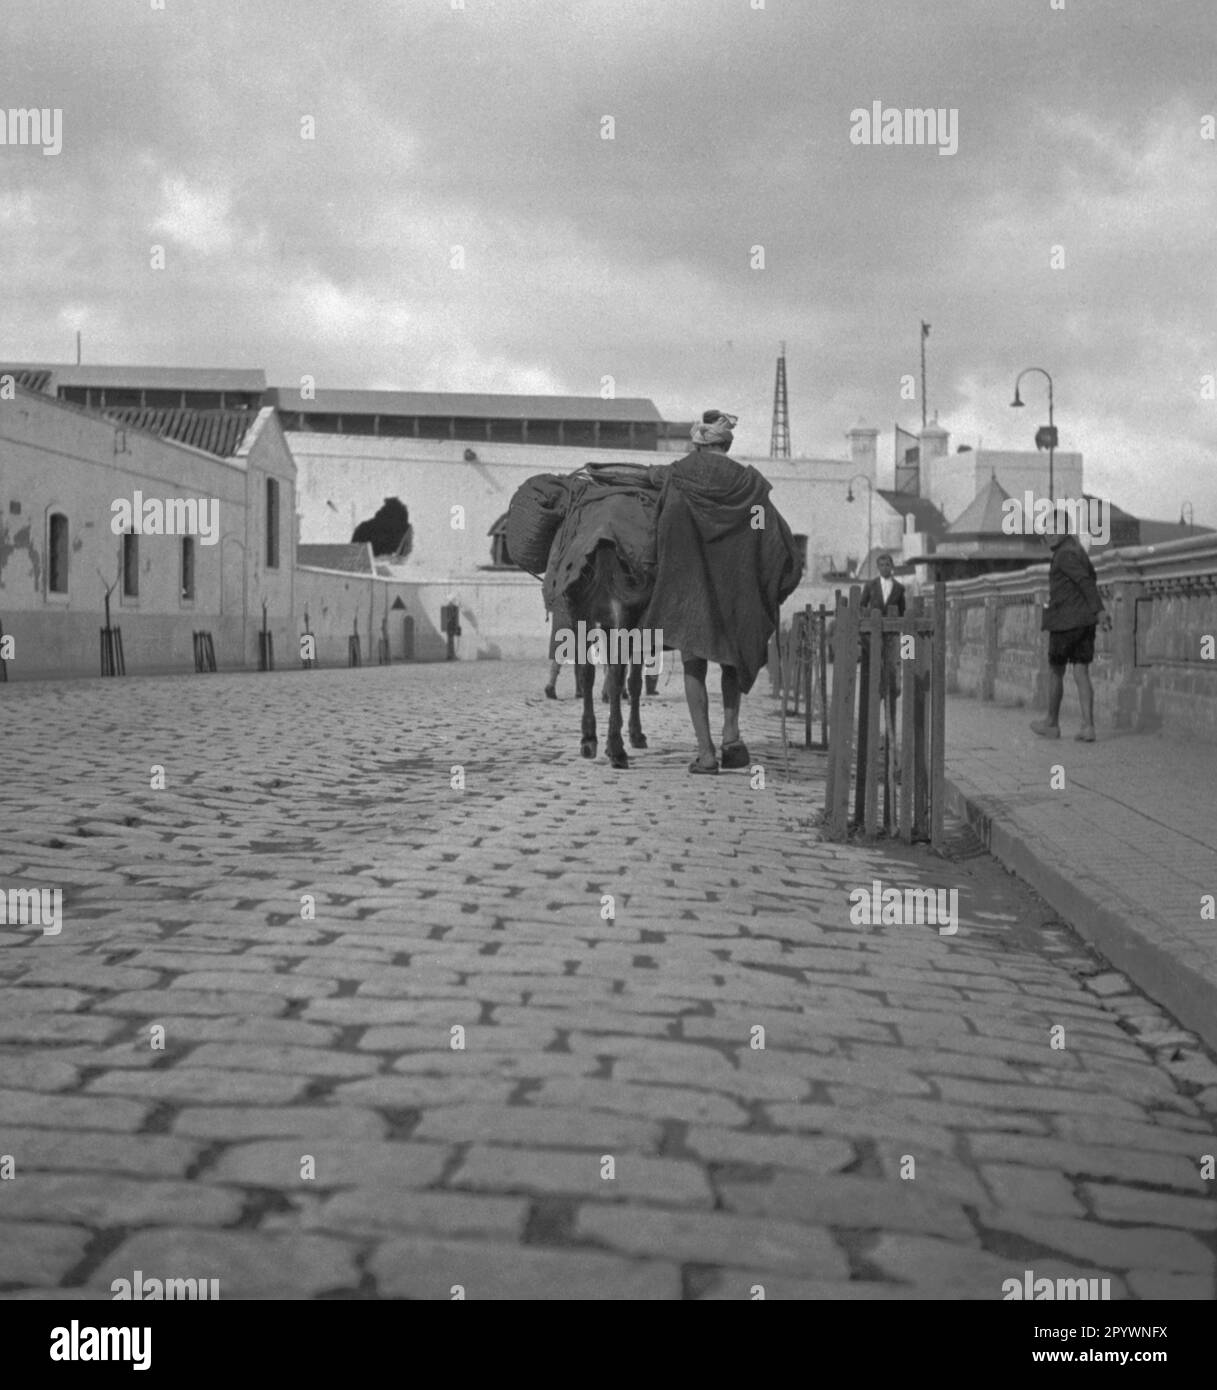 Un homme descend une rue à Tétoun avec un cheval chargé. Banque D'Images